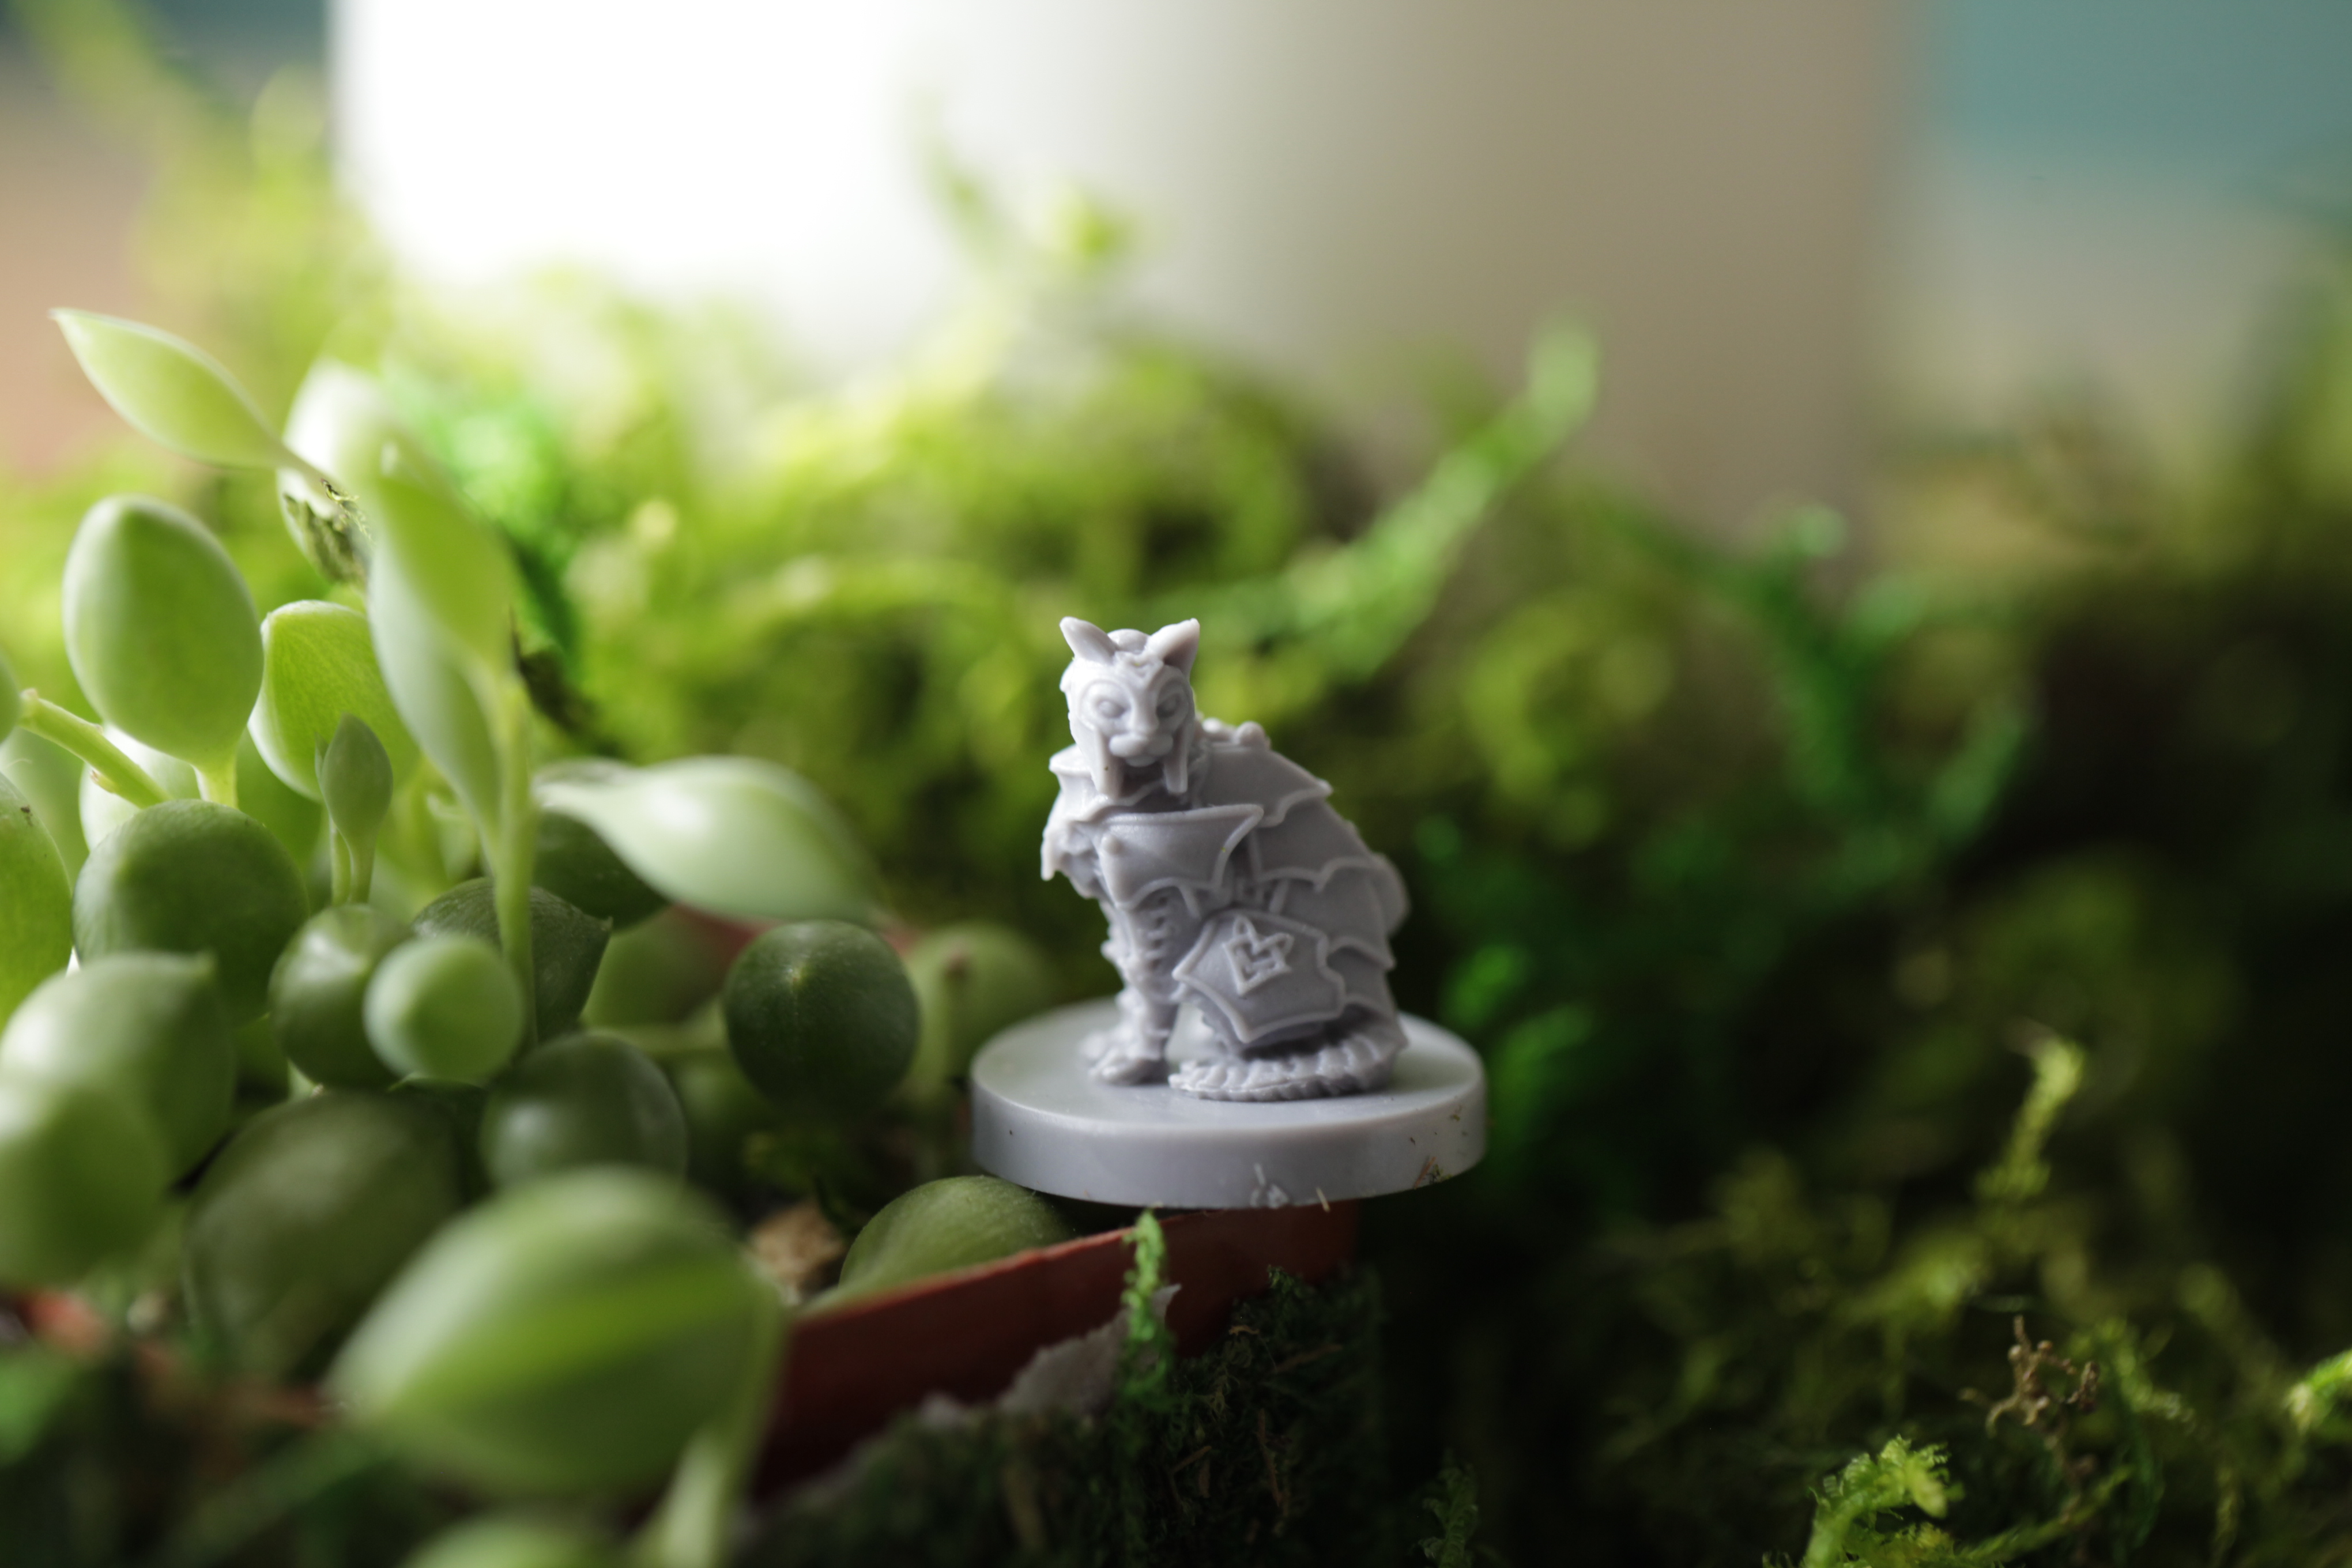 A solo D&D mini of a cat sorcerer among greenery